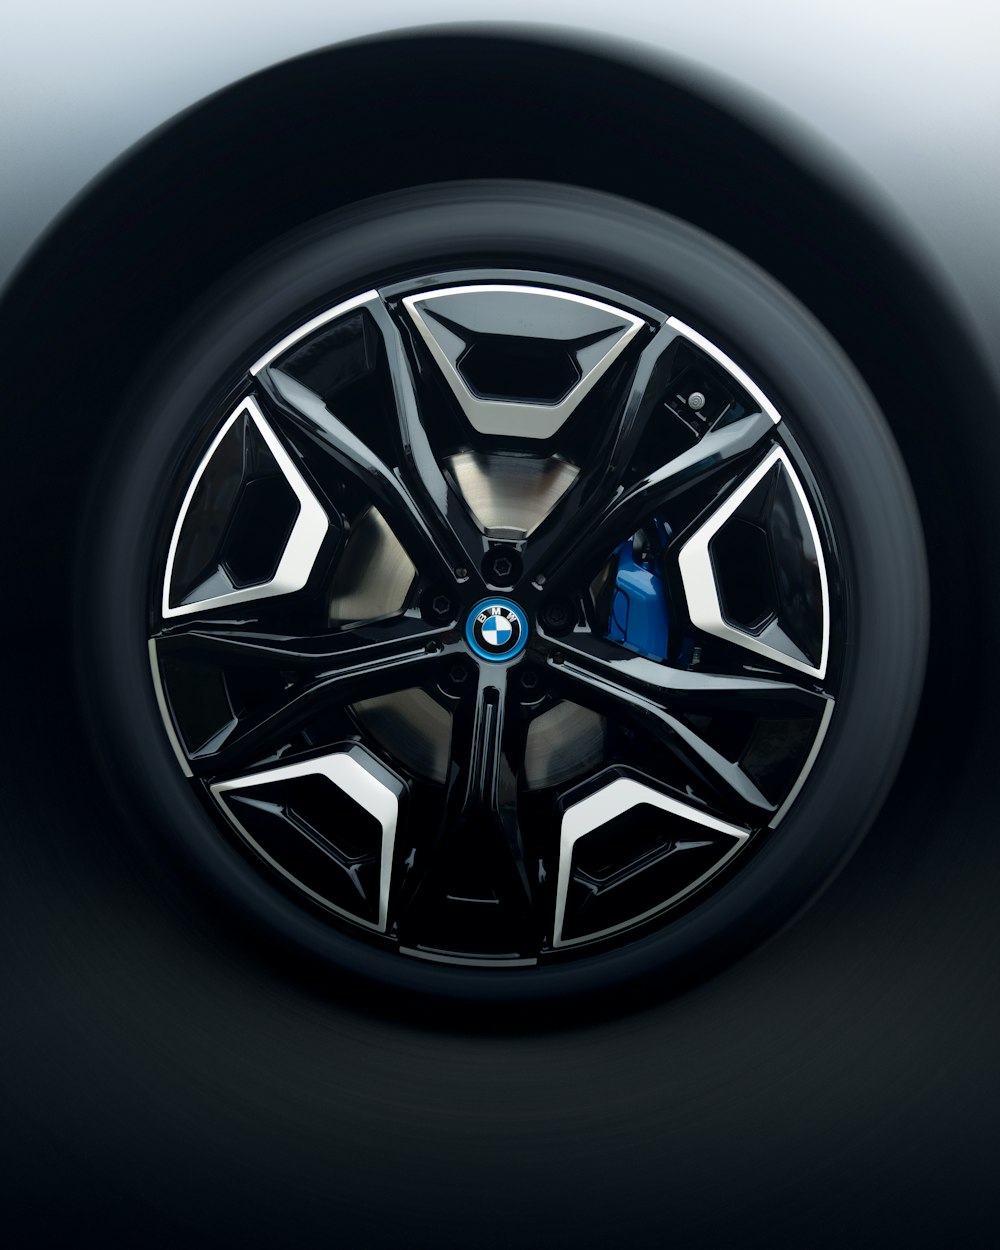 a close up of a car wheel